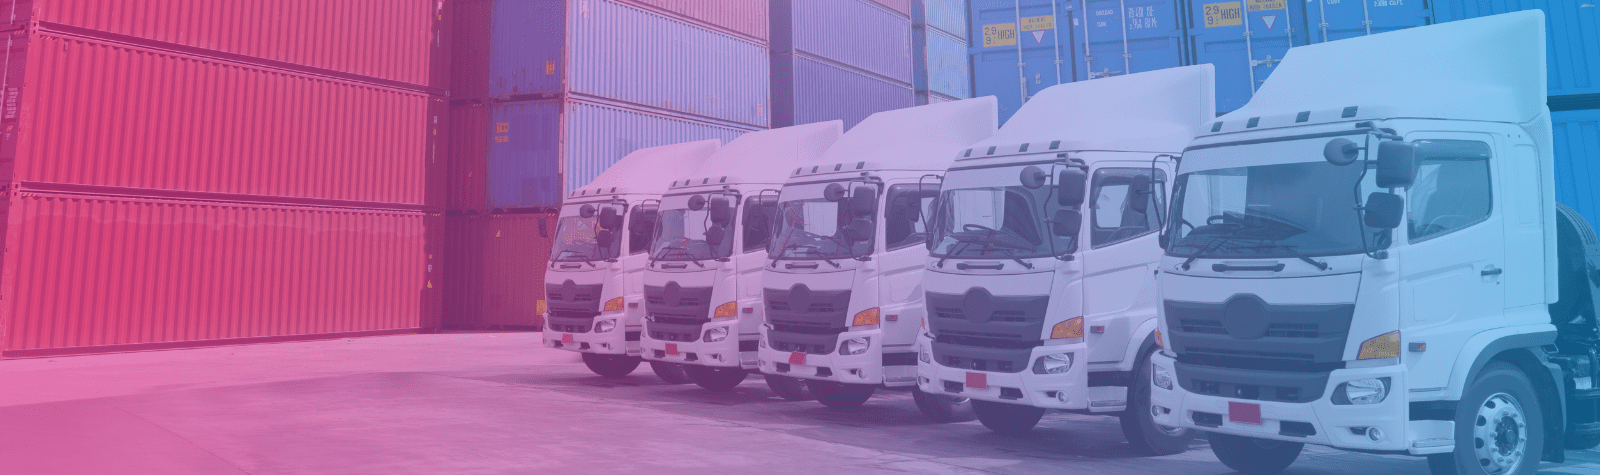 Frota de caminhões definidos para a operação logística